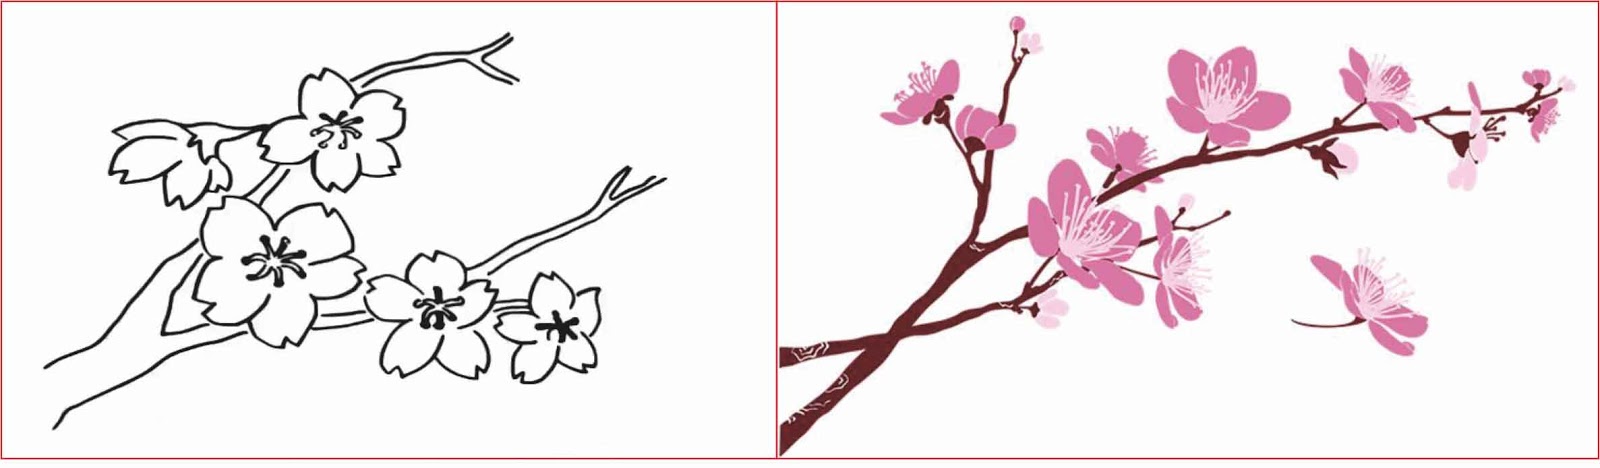 30+ Gambar Sketsa Bunga Mudah | Bunga Matahari, Mawar ...